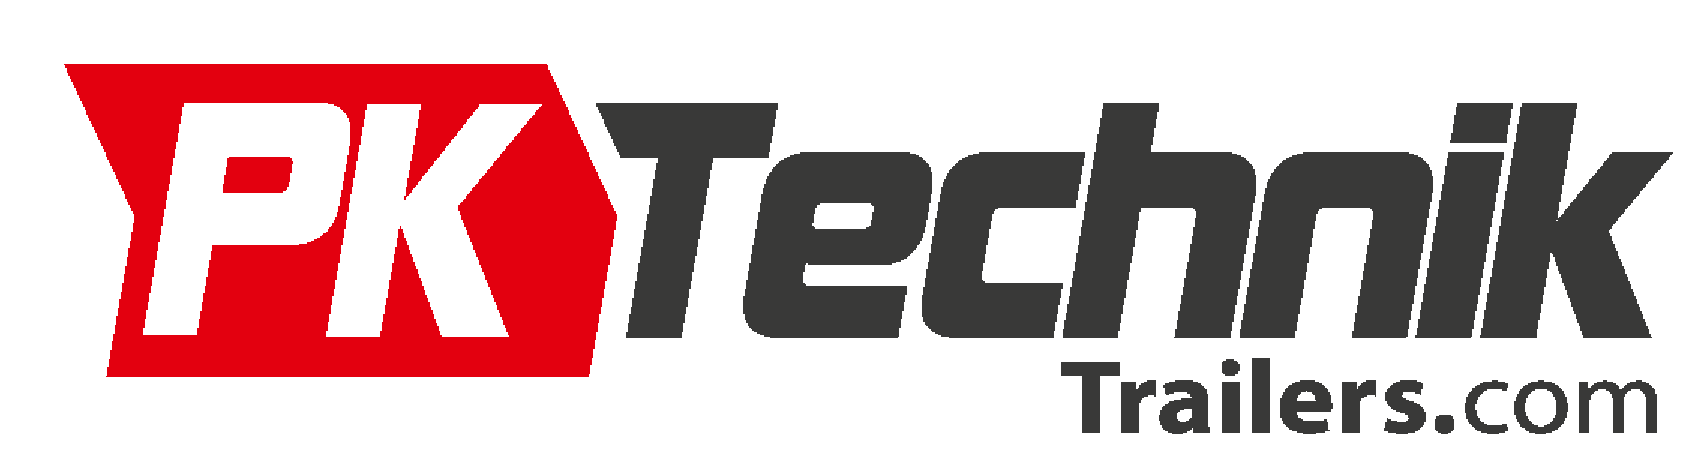 PkTechnik - logo2 tablet